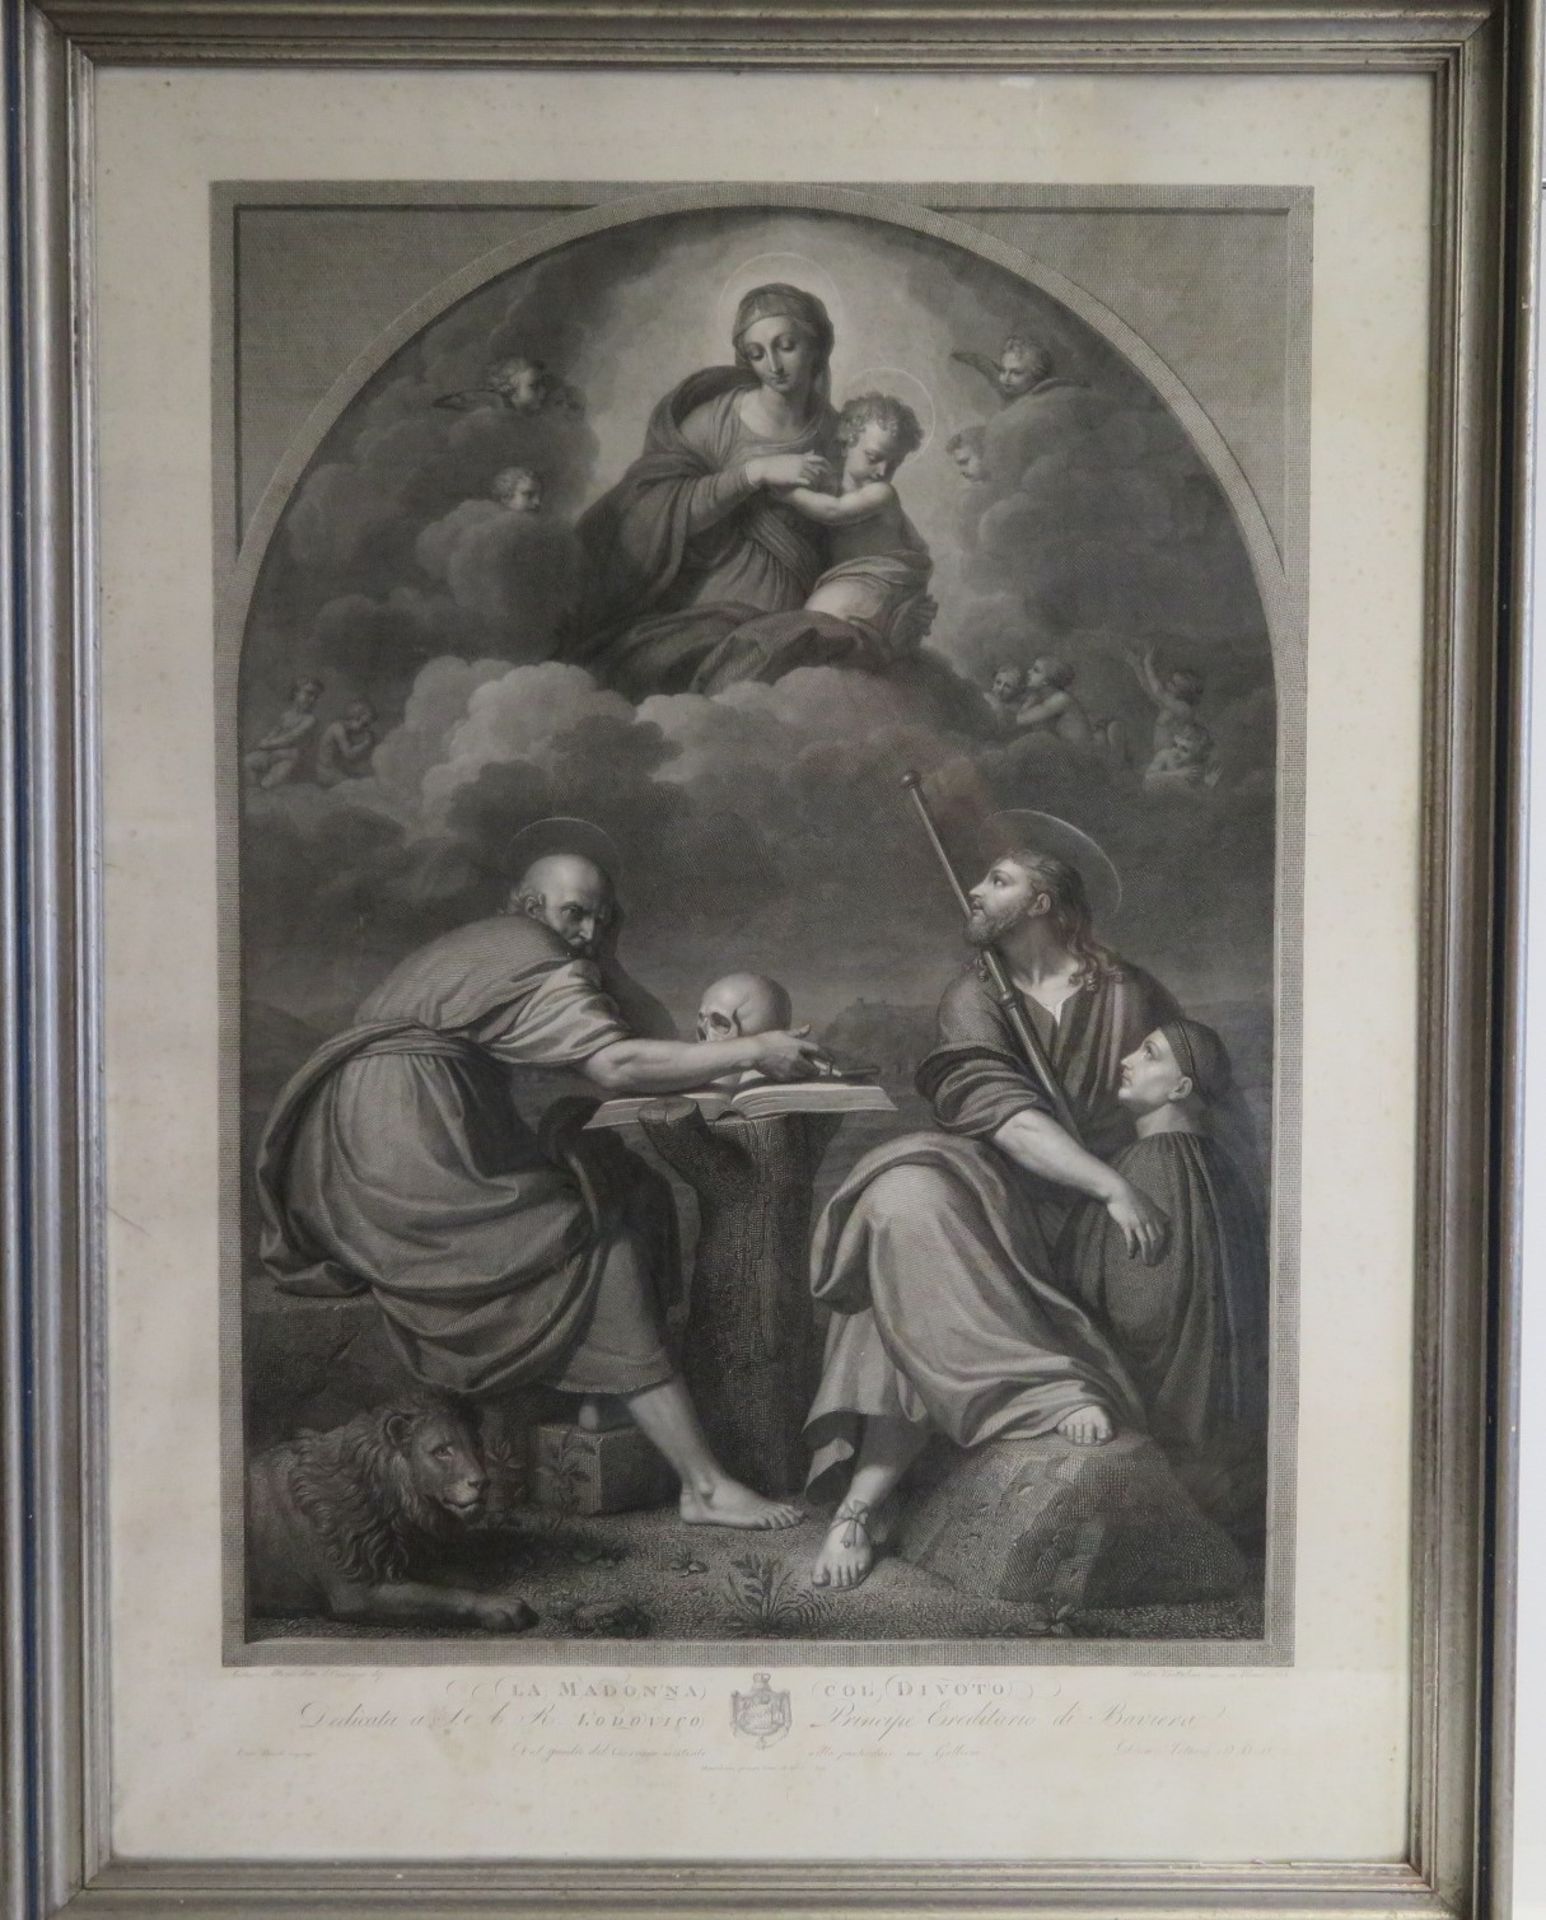 Bettelini, Pietro Antonio Leone, 1763 - 1829, Caslano - Rom, Schweizer Maler und Kupferstecher, 